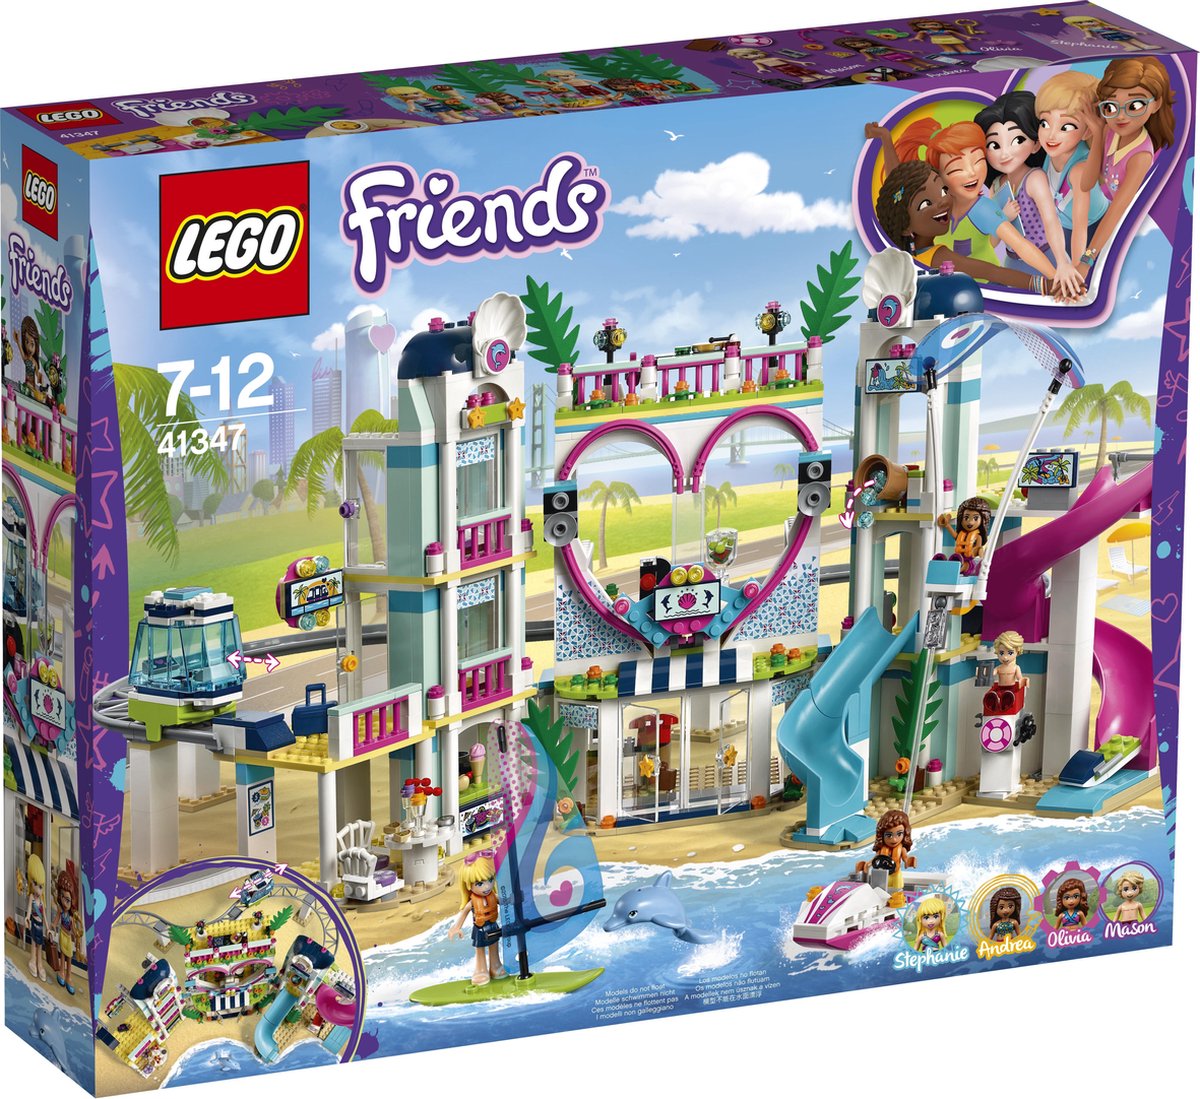 LEGO Friends Heartlake City Resort - 41347 | bol.com